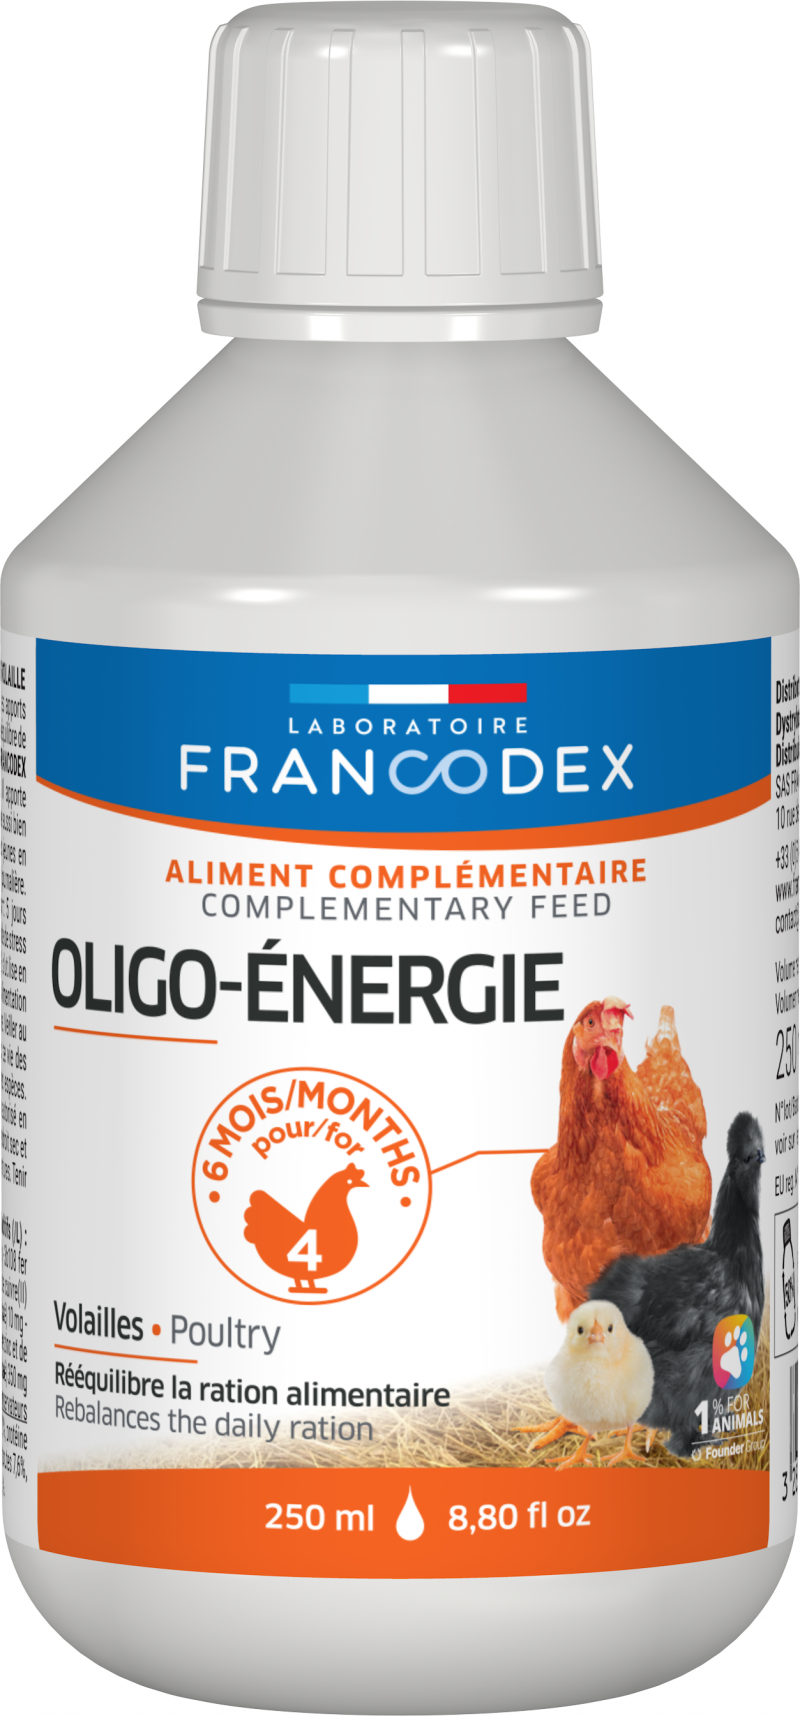 Francodex Aliment Complémentaire pour volaille